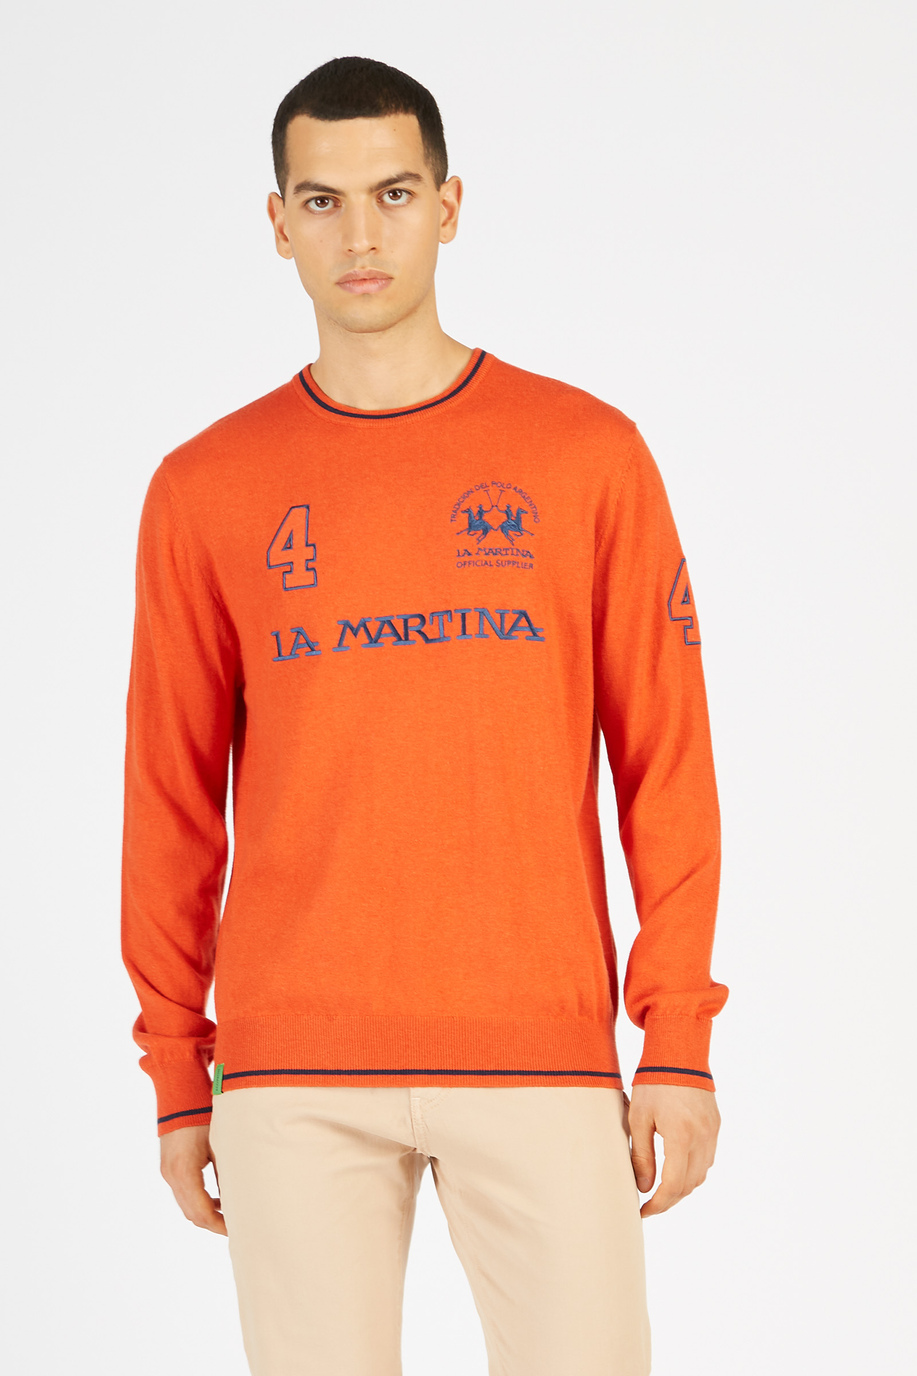 Maglia tricot da uomo in misto cotone girocollo regular fit -  Taglie XL | La Martina - Official Online Shop